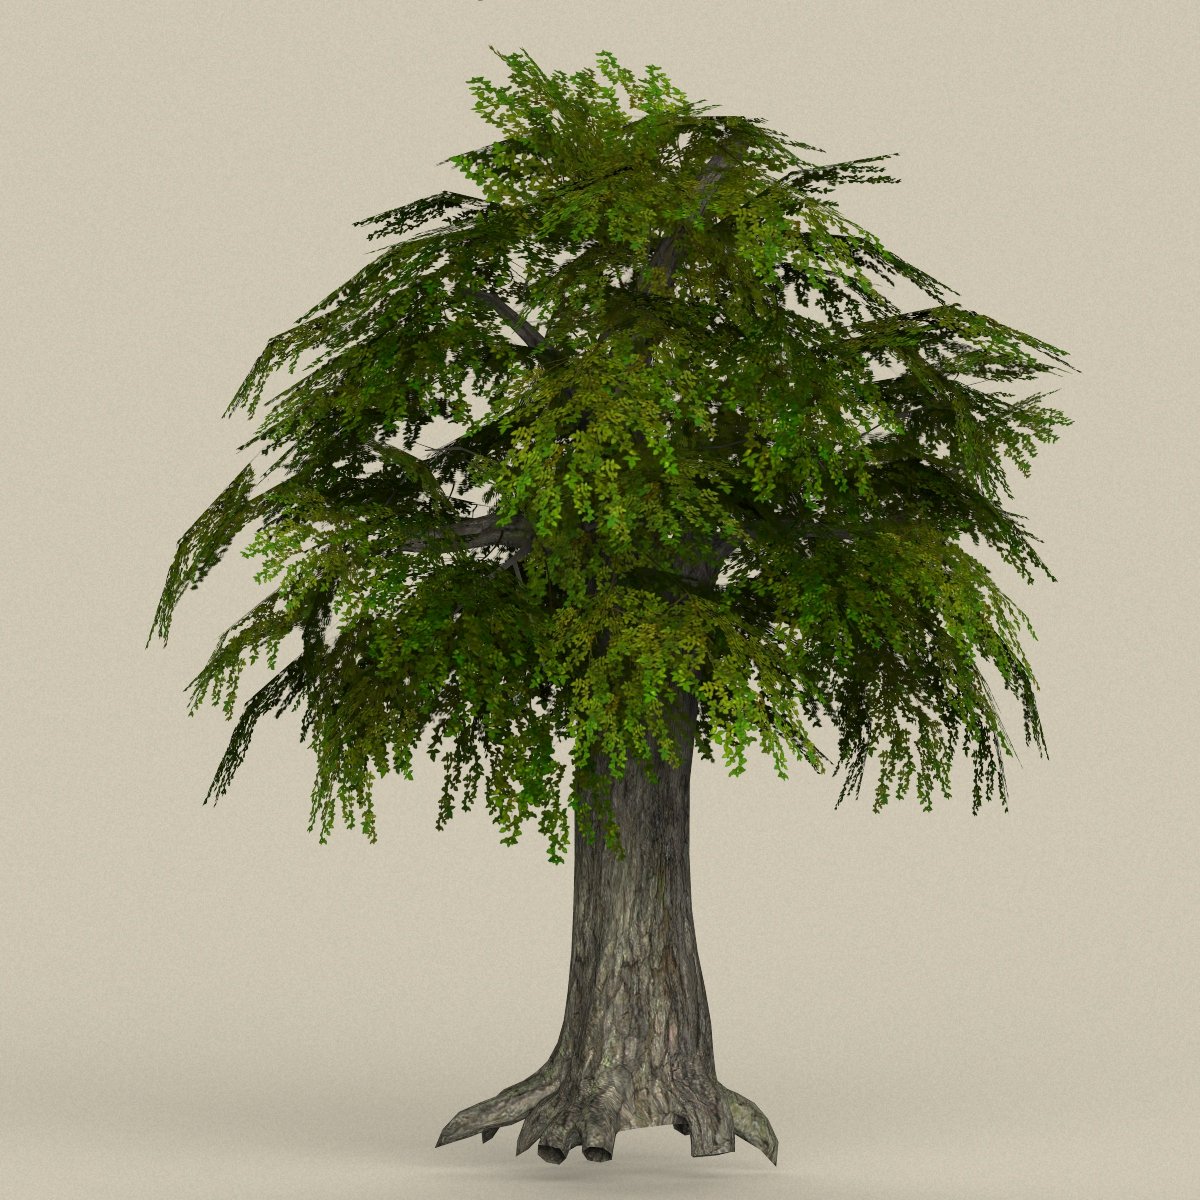 Дерево в 3 d. Tree 3ds Max. Модель дерева. 3d модель дерева. Дерево STL модель.